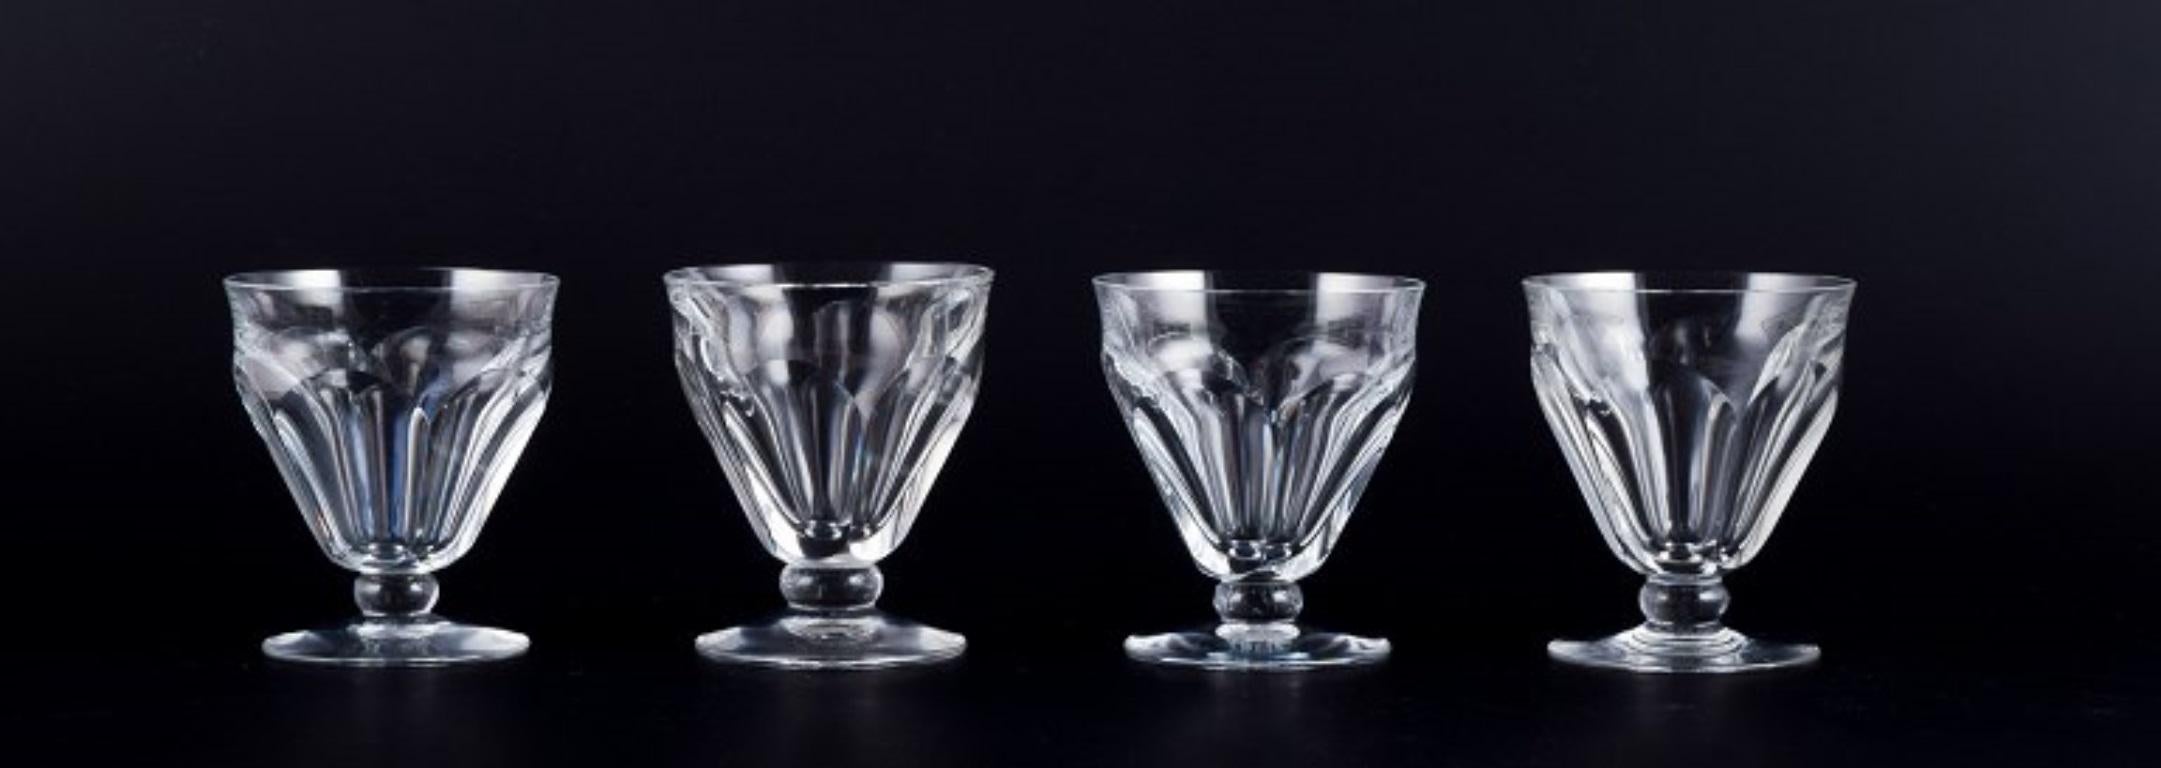 Baccarat, Frankreich. Ein Satz von vier Weißweingläsern im Art déco-Stil aus facettiertem Kristallglas. 
1930er/1940er Jahre.
Markiert.
Perfekter Zustand.
Abmessungen: D 7,5 cm x H 8,5 cm.

